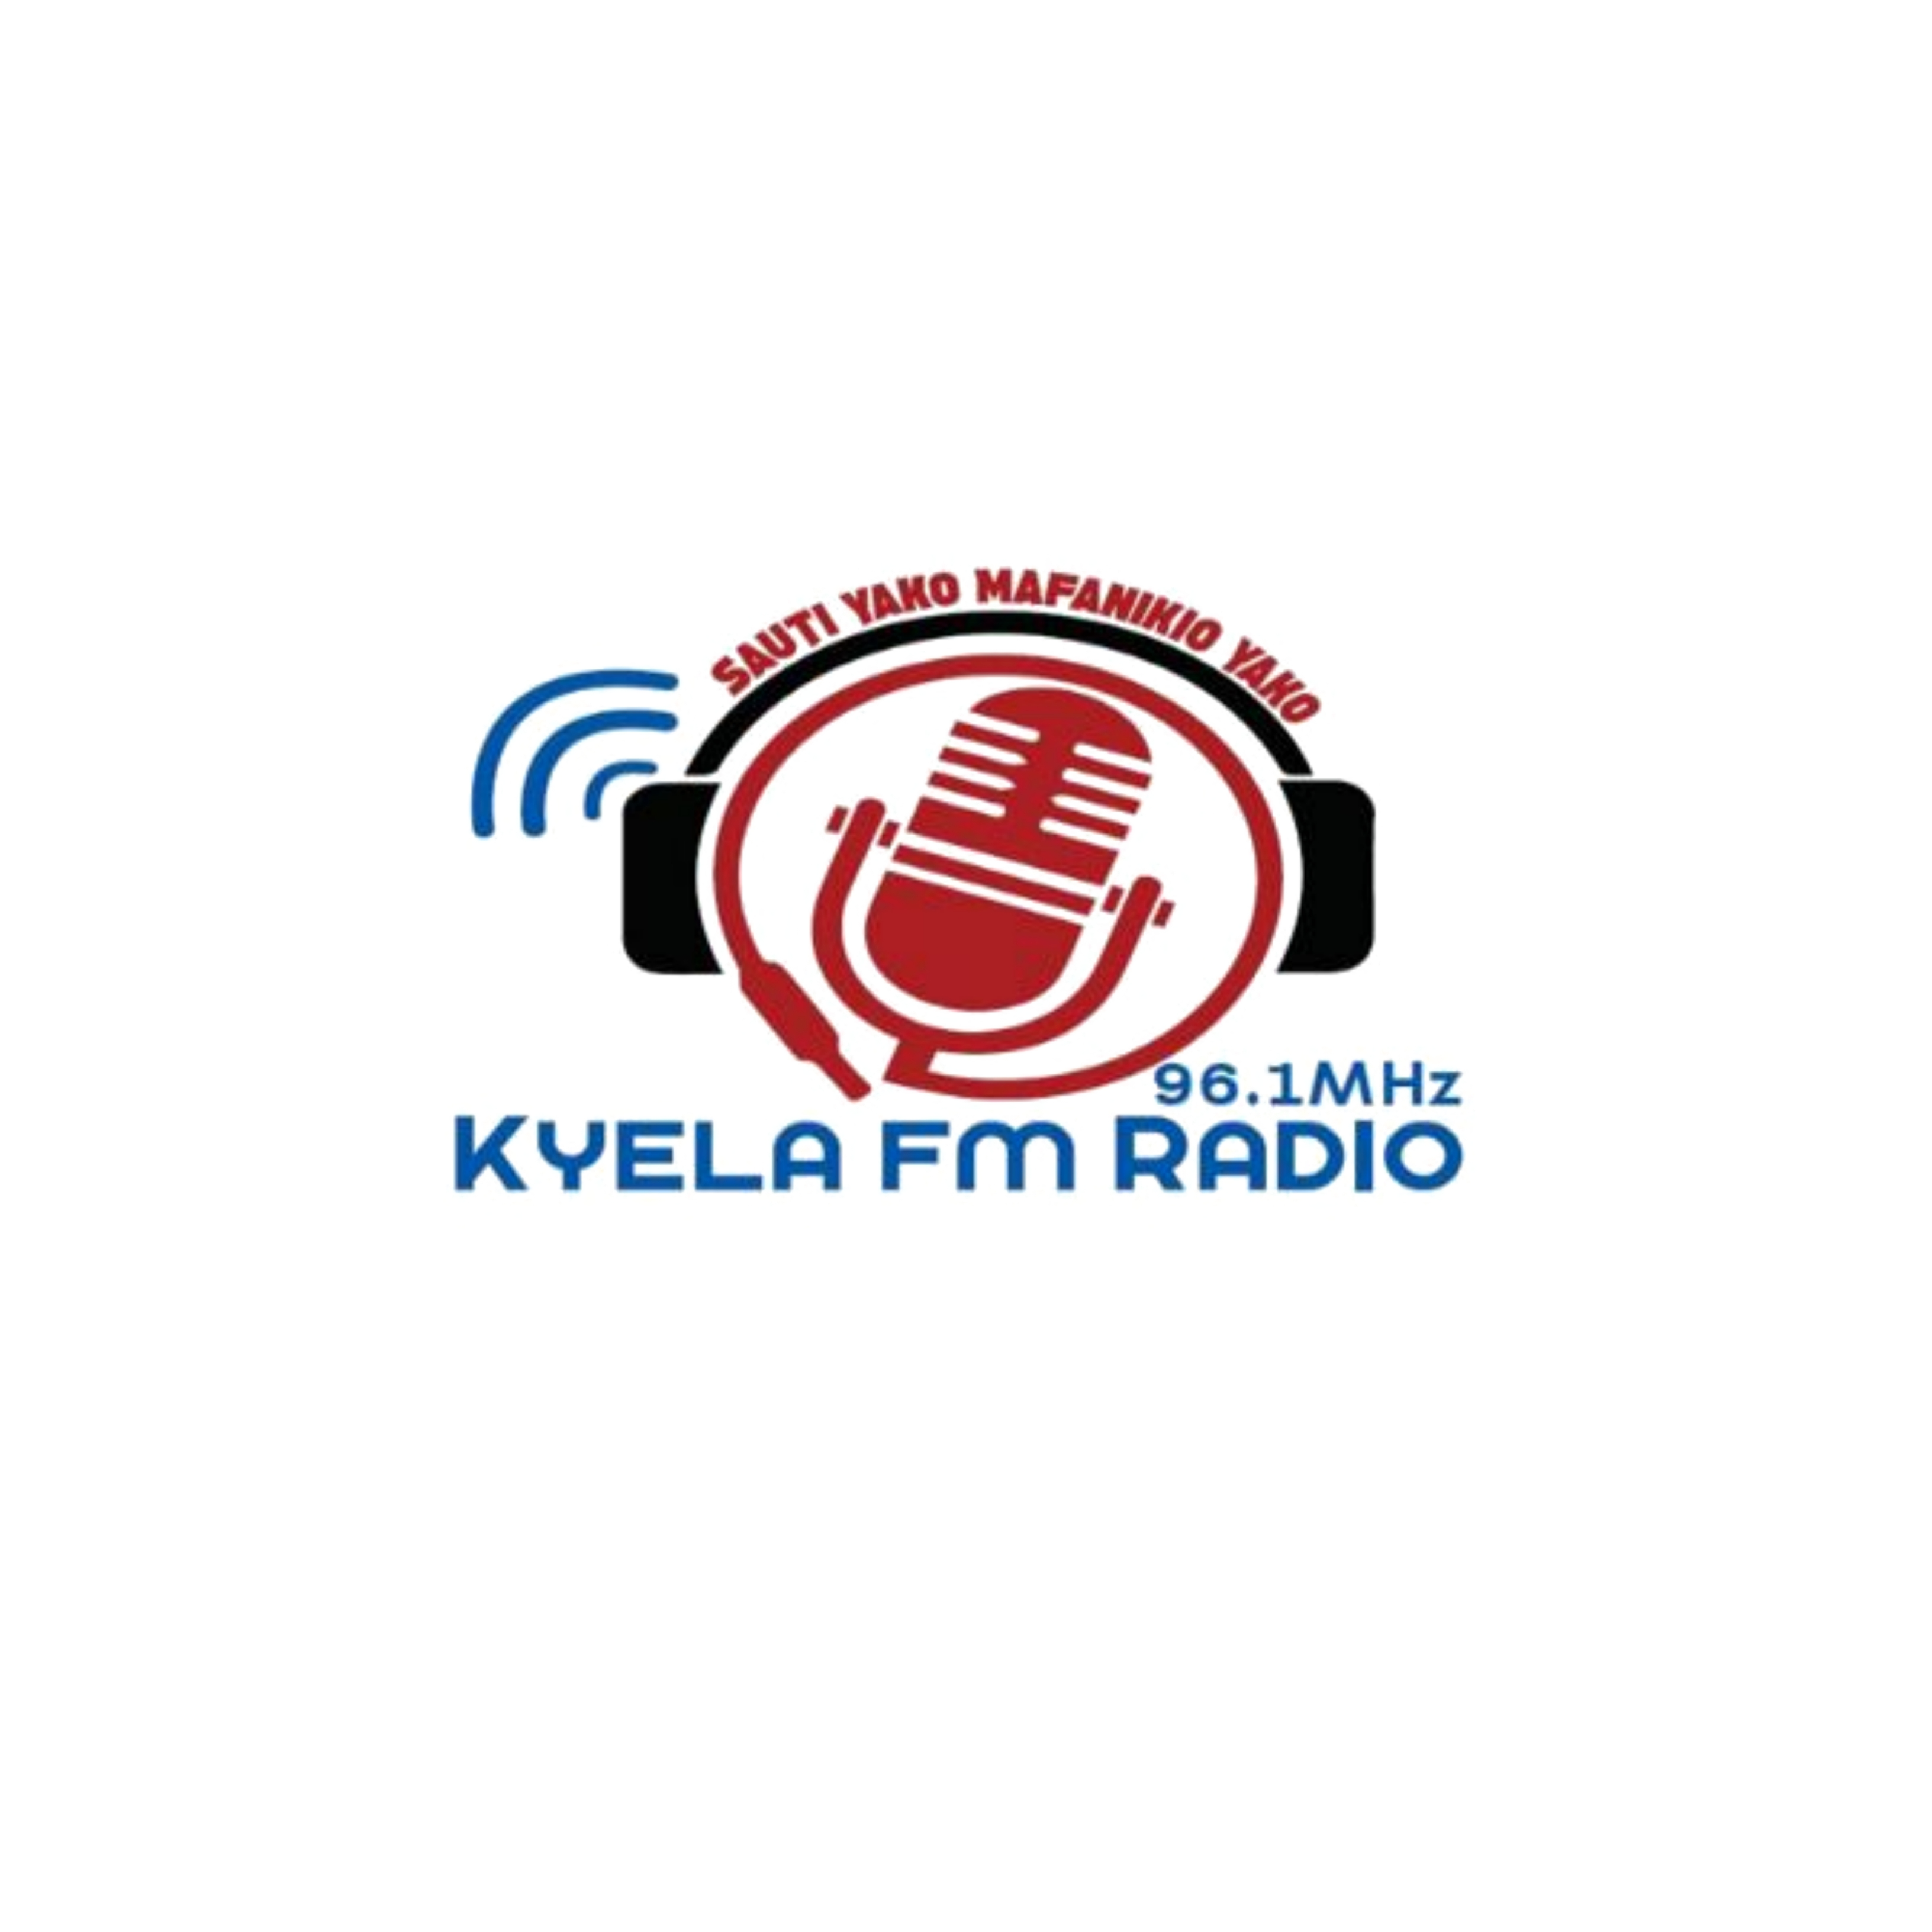 KYELA FM RADIO 96.1 MHz